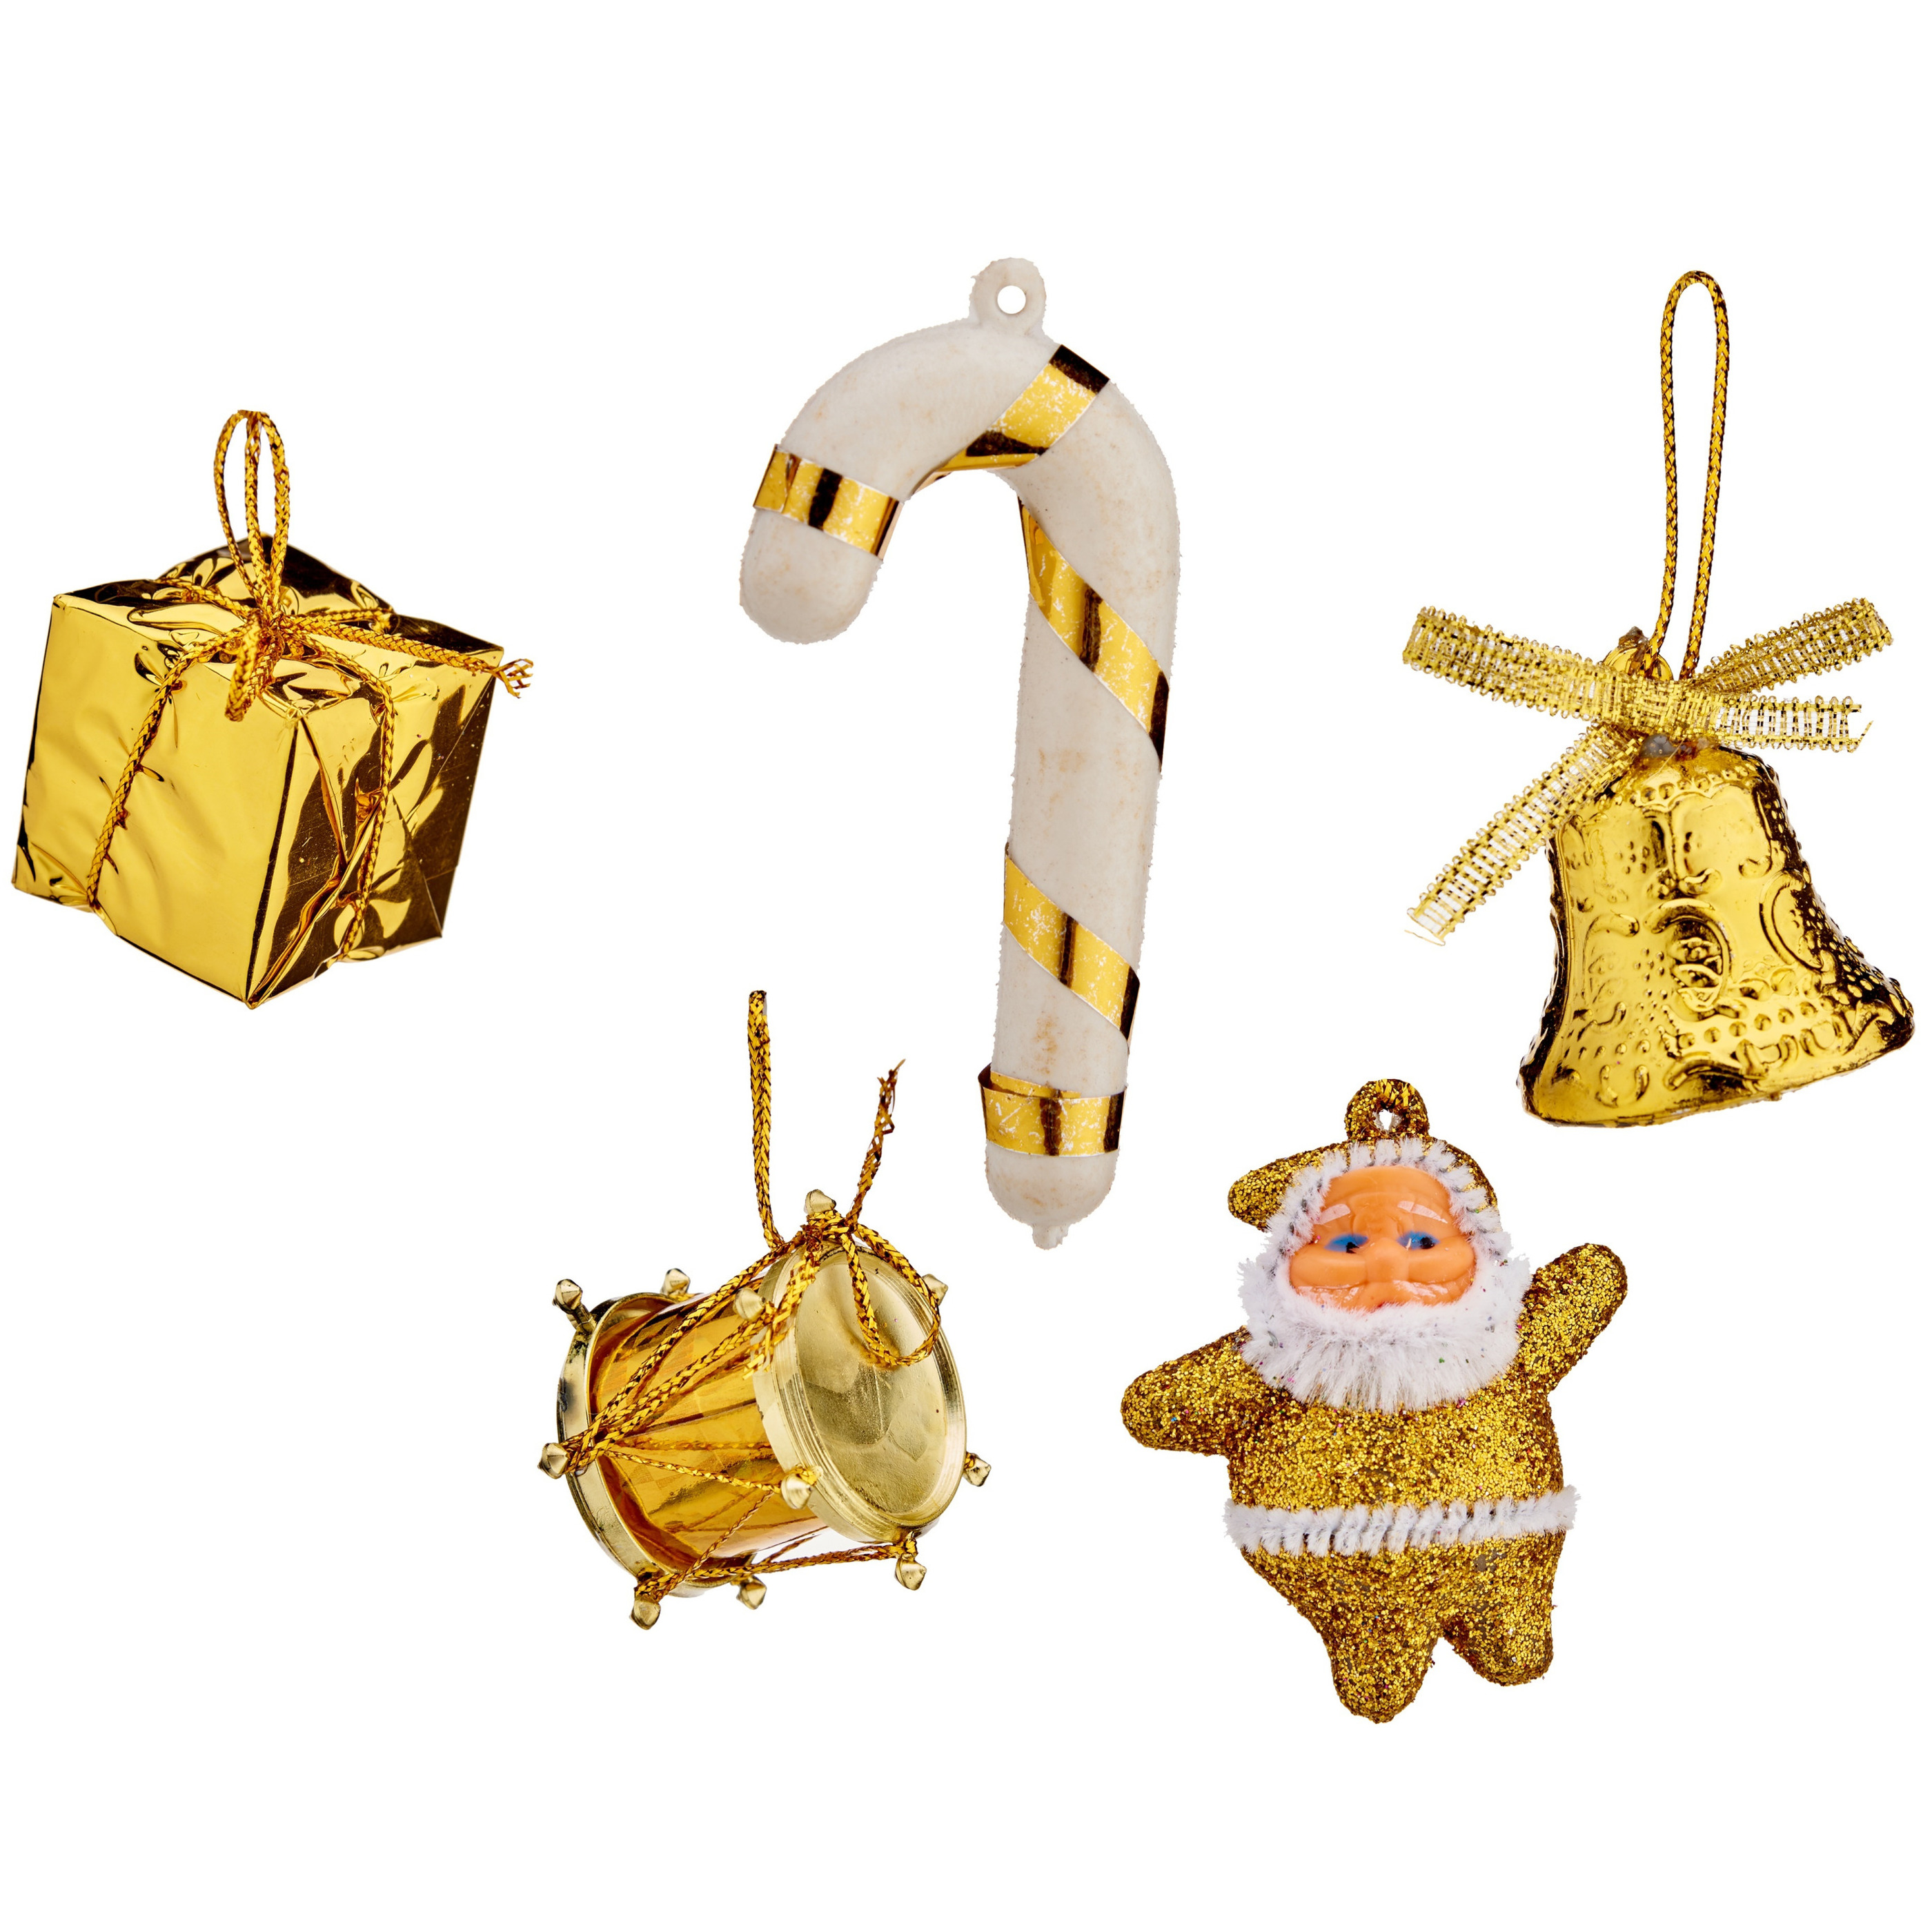 24x stuks kunststof kerstornamenten inclusief piek goud voor een mini kerstboom